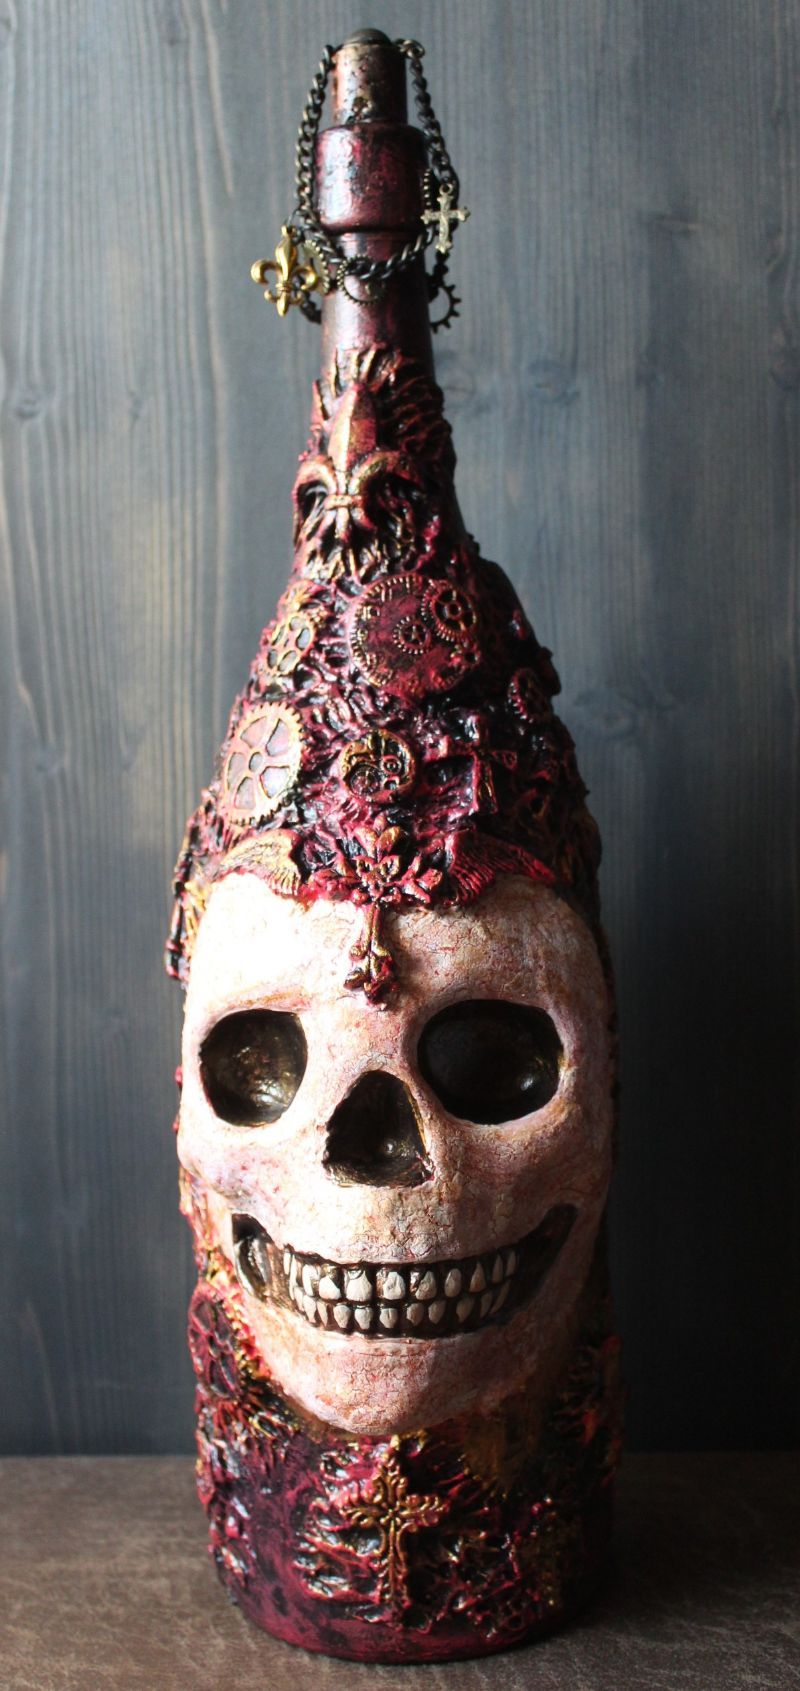  - Totenkopf NEWBORN Acrylmalerei auf einer Glasflasche Gothic Steampunk Skull Schädel Geschenk für Männer Upcycling Deko Bikergeschenk